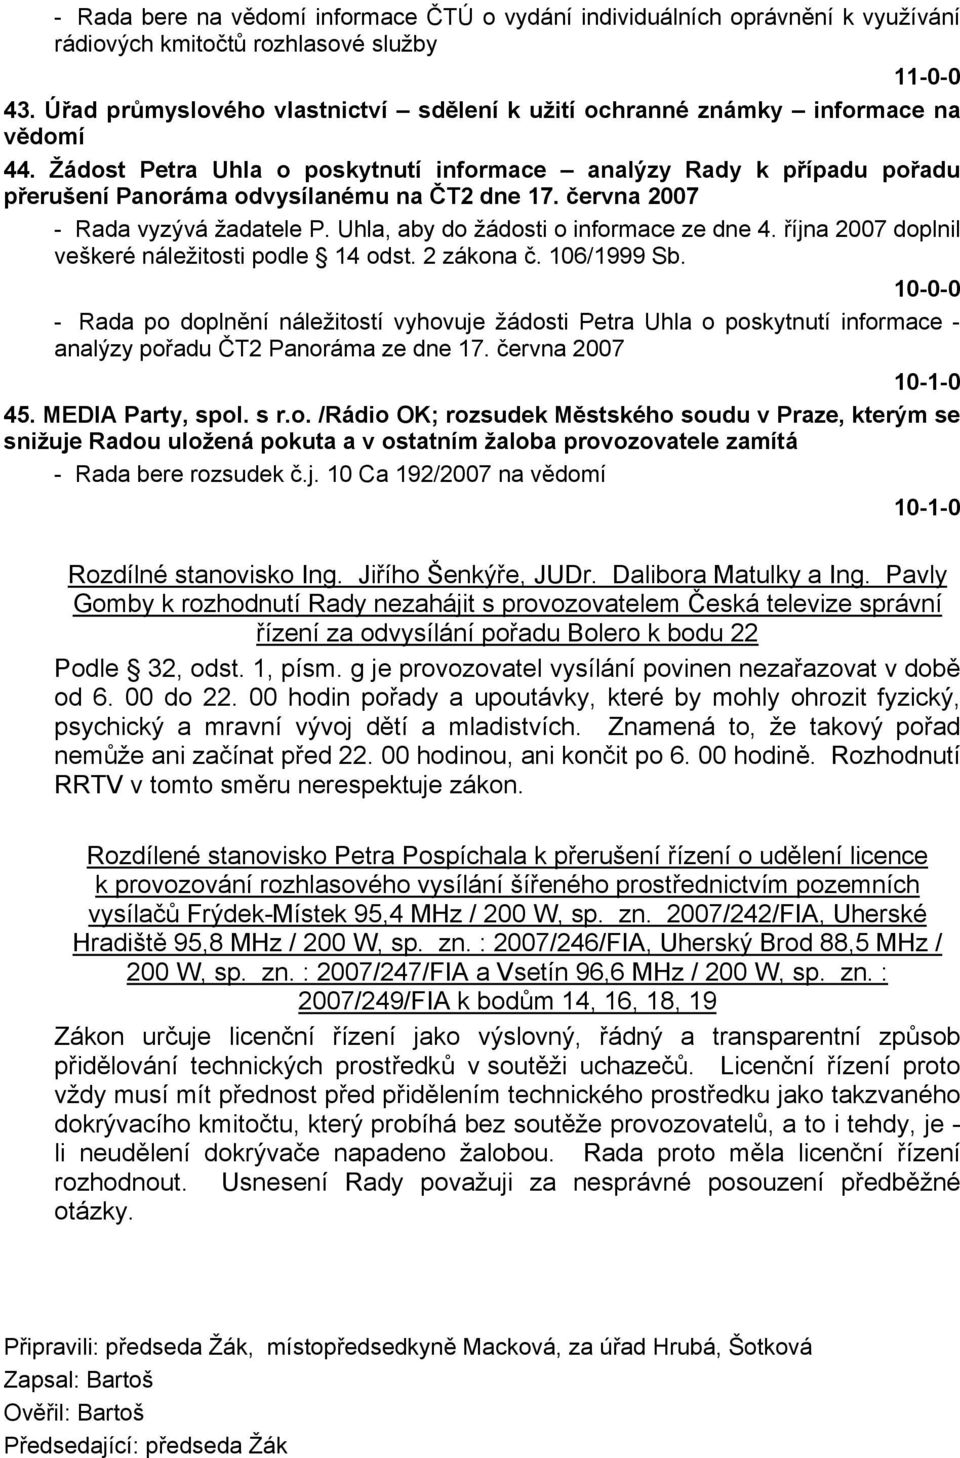 Žádost Petra Uhla o poskytnutí informace analýzy Rady k případu pořadu přerušení Panoráma odvysílanému na ČT2 dne 17. června 2007 - Rada vyzývá žadatele P. Uhla, aby do žádosti o informace ze dne 4.